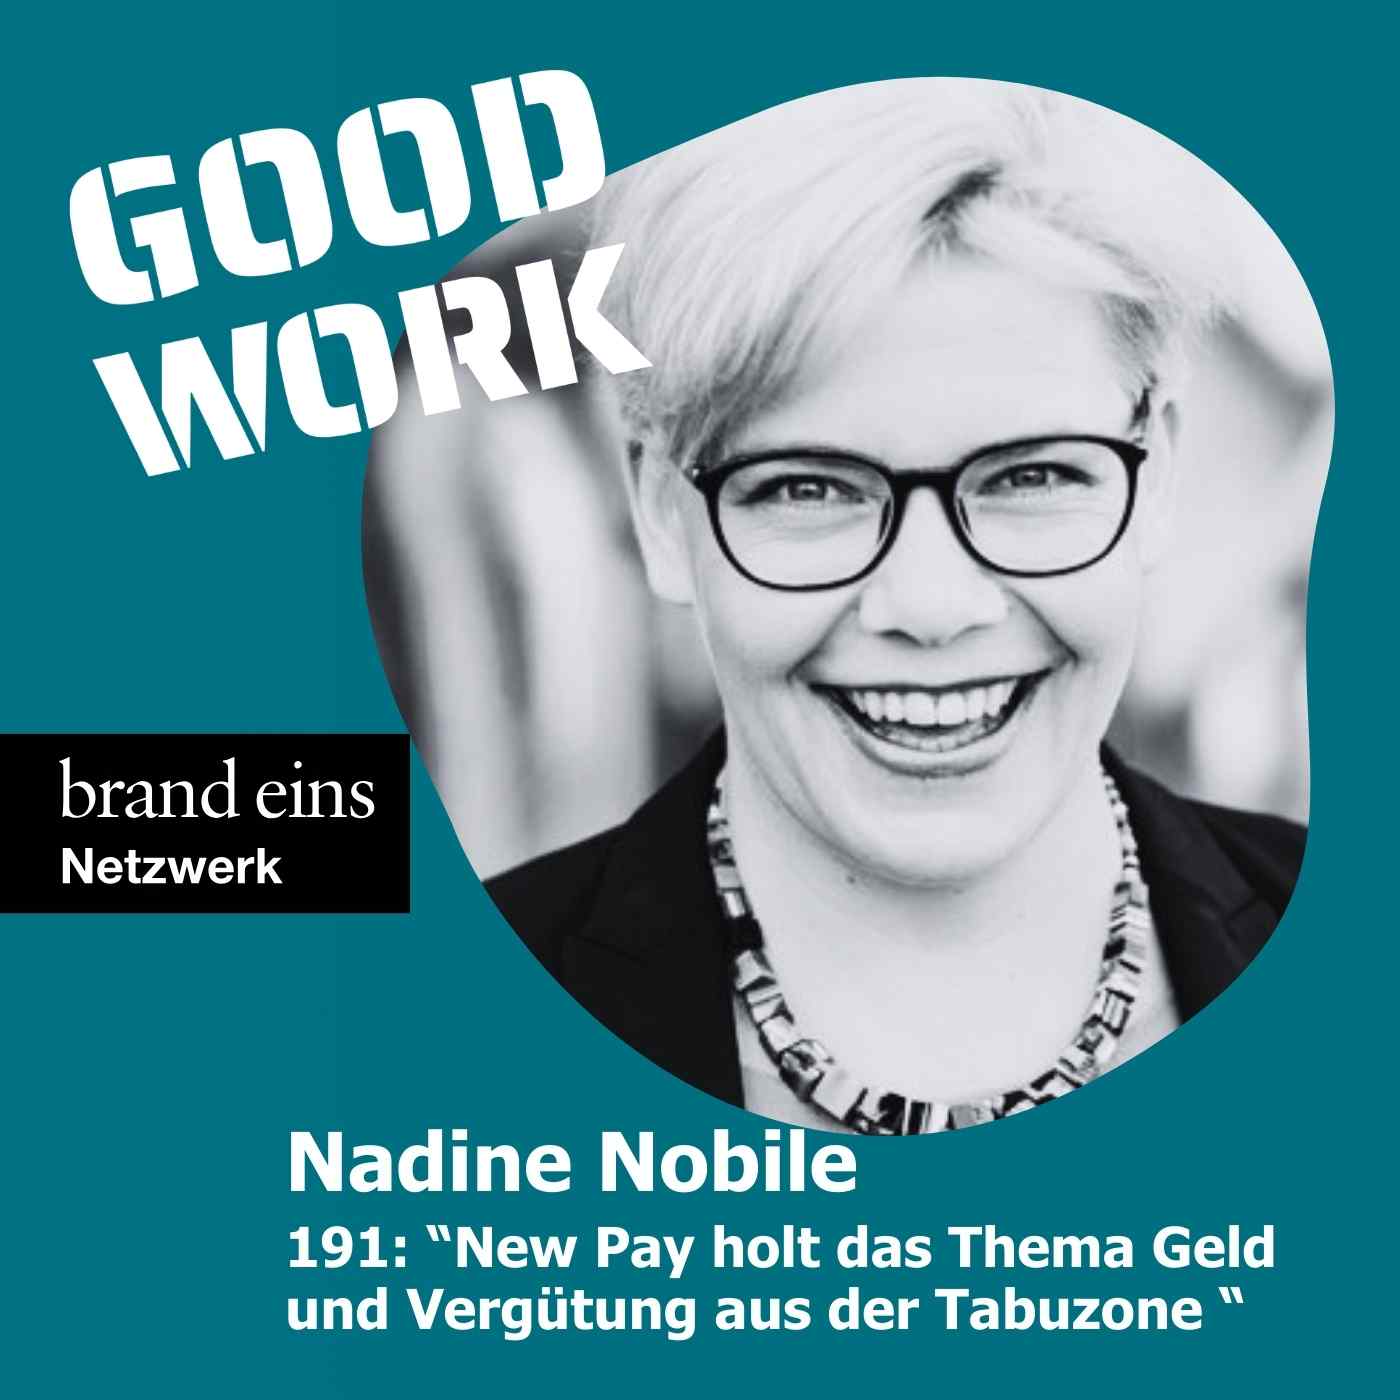 "New Pay holt das Thema Geld und Vergütung aus der Tabuzone" mit Nadine Nobile, New Pay Collective